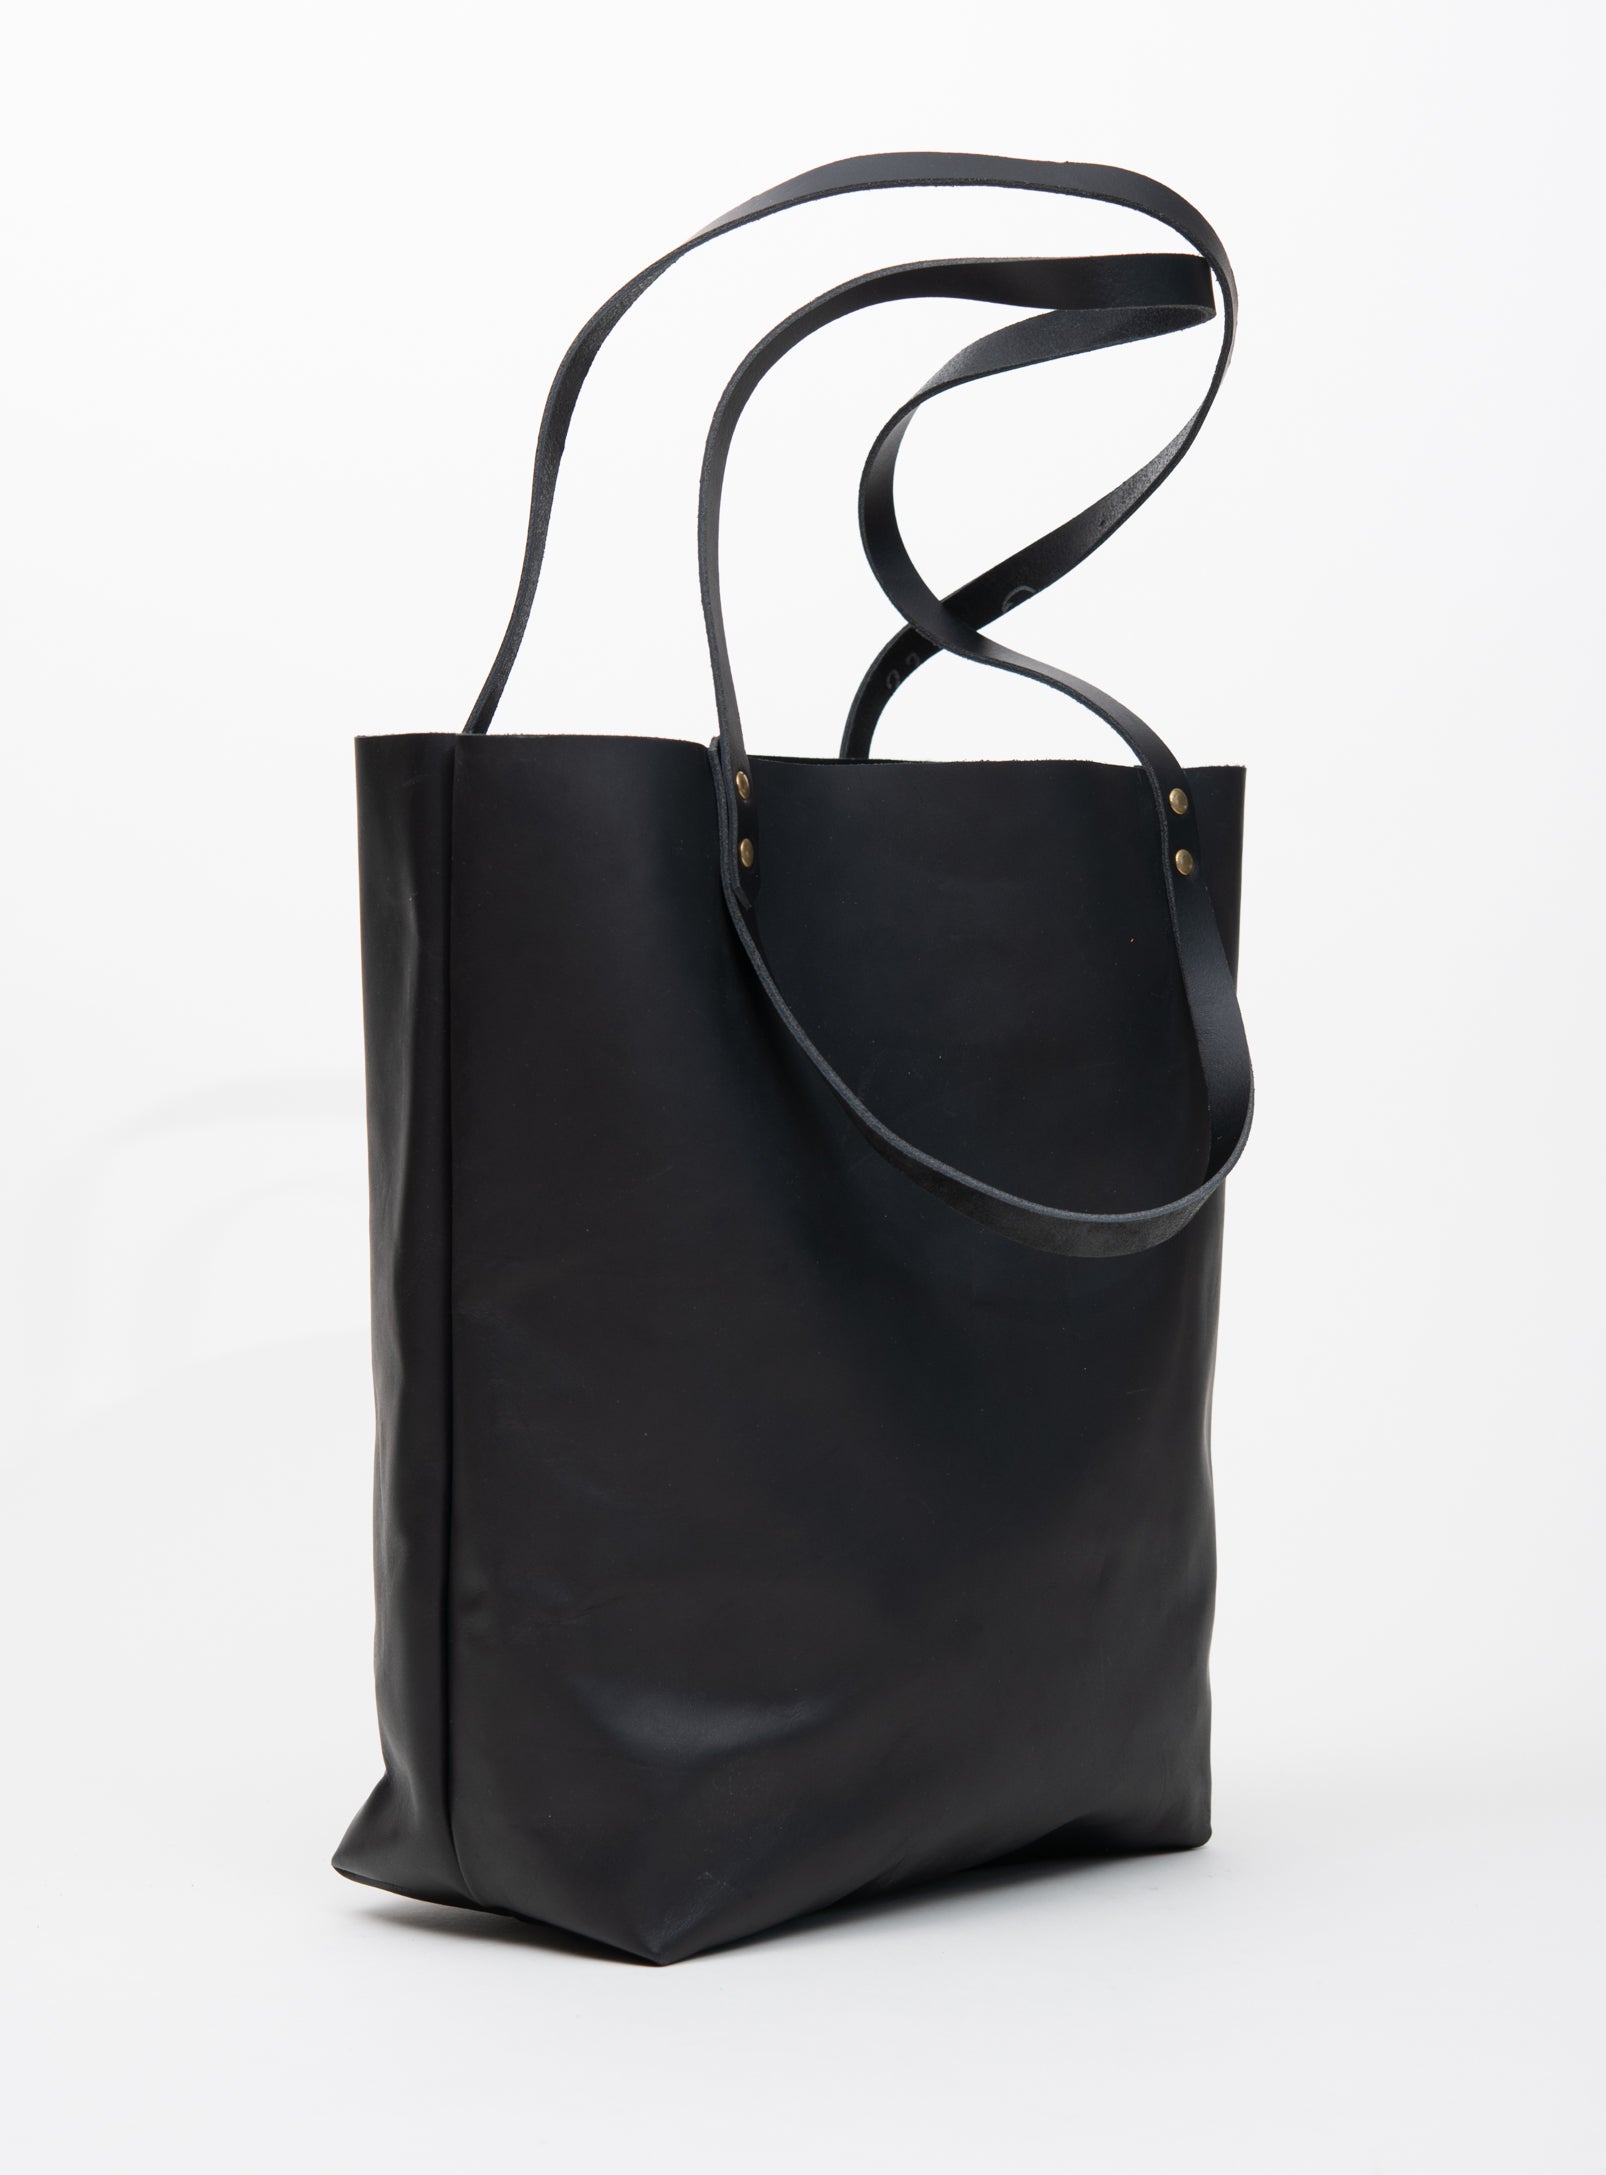 Minimalist Leather Shoulder Bag Black